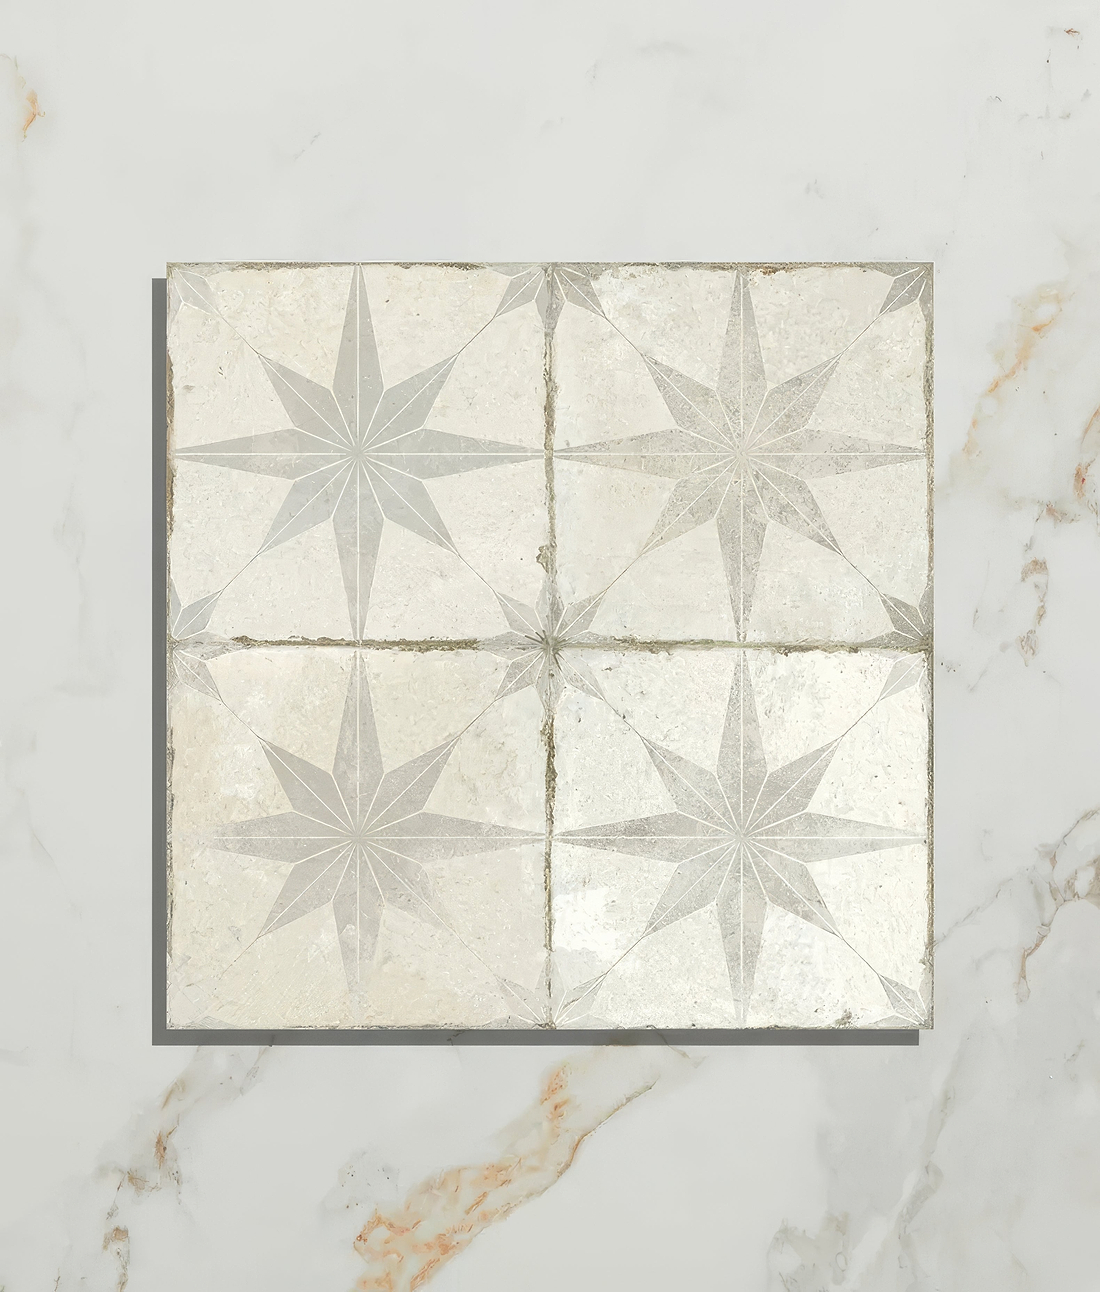 Spitalfields Ceramic Retro Star White - Hyperion Tiles